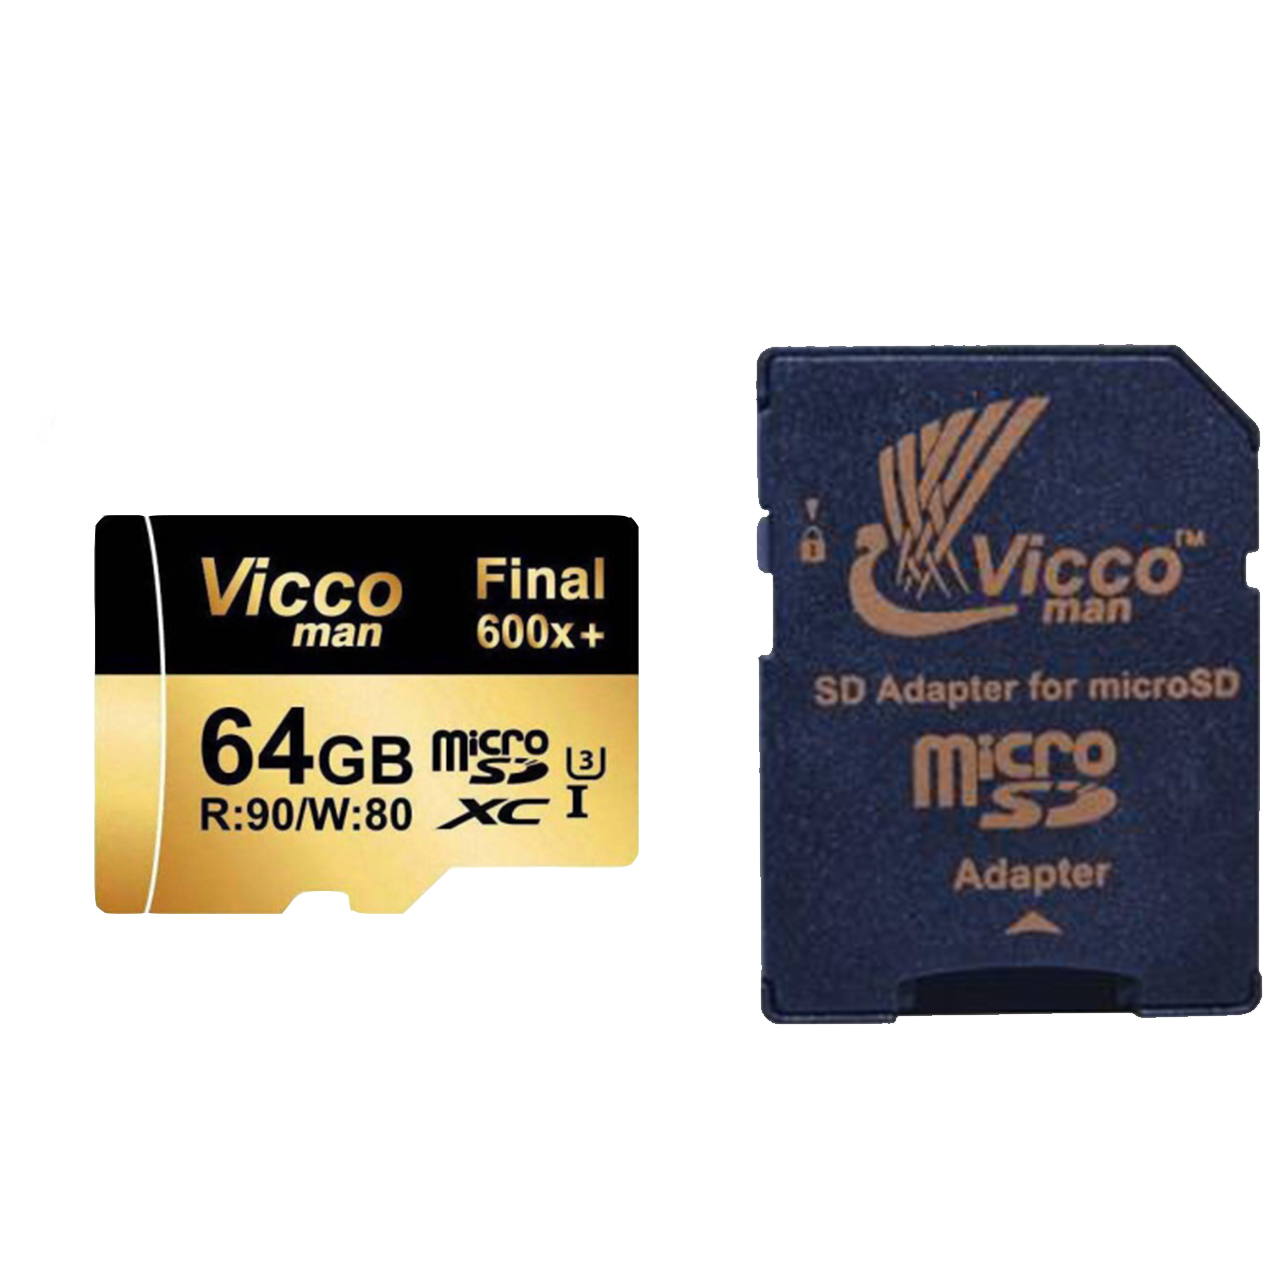 آنباکس کارت حافظه microSDXC ویکومن مدل 600x plus کلاس 10 استاندارد UHS-I U3 سرعت 90MBs ظرفیت 64 گیگابایت به همراه آداپتور SD توسط داود صاحبی بزاز در تاریخ ۳۰ خرداد ۱۳۹۹